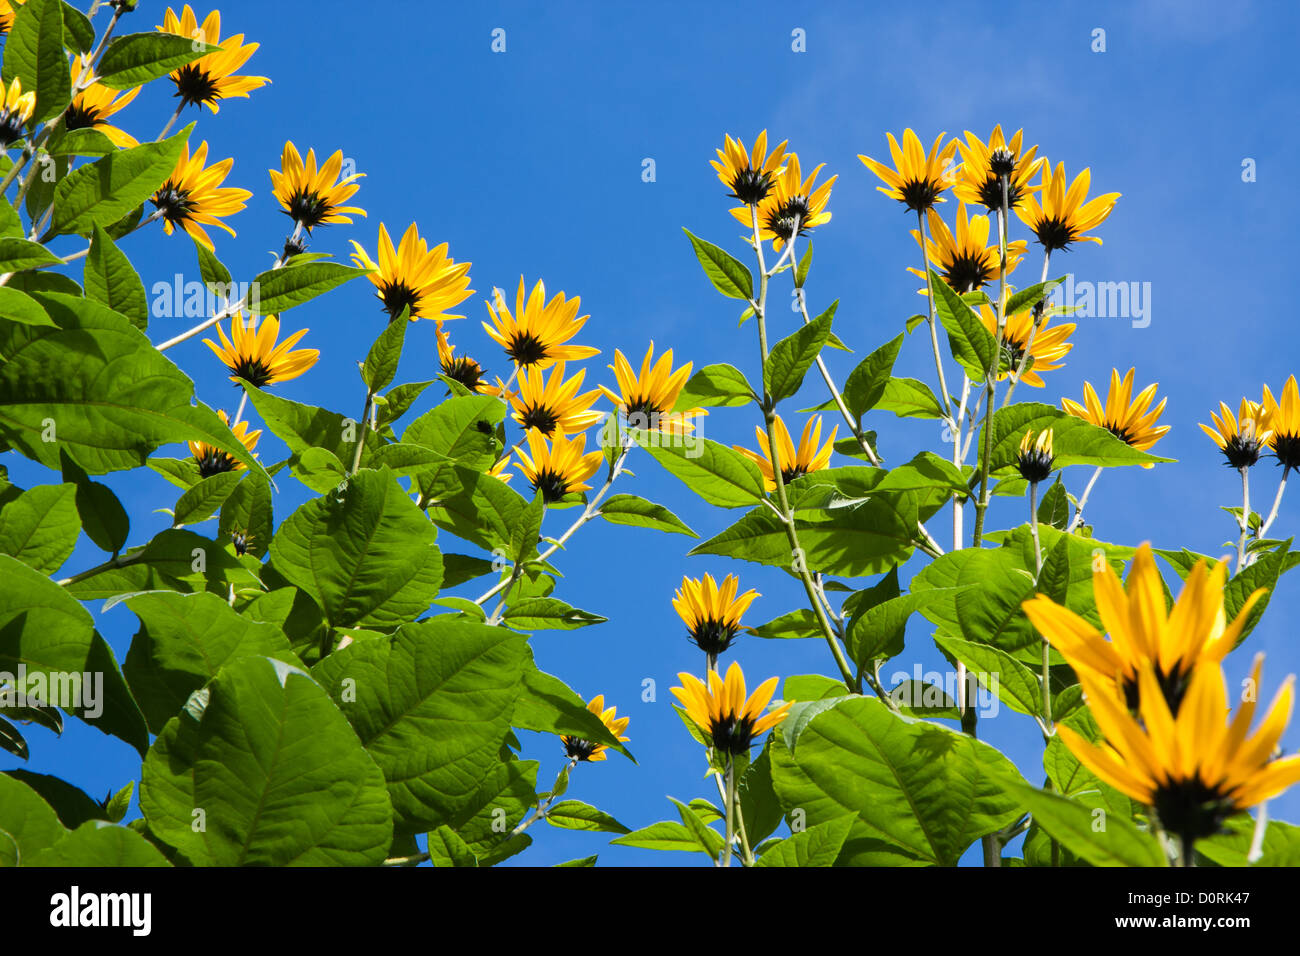 Les fleurs jaunes de topinambours plantes, une espèce de tournesol, contre un ciel bleu profond Banque D'Images